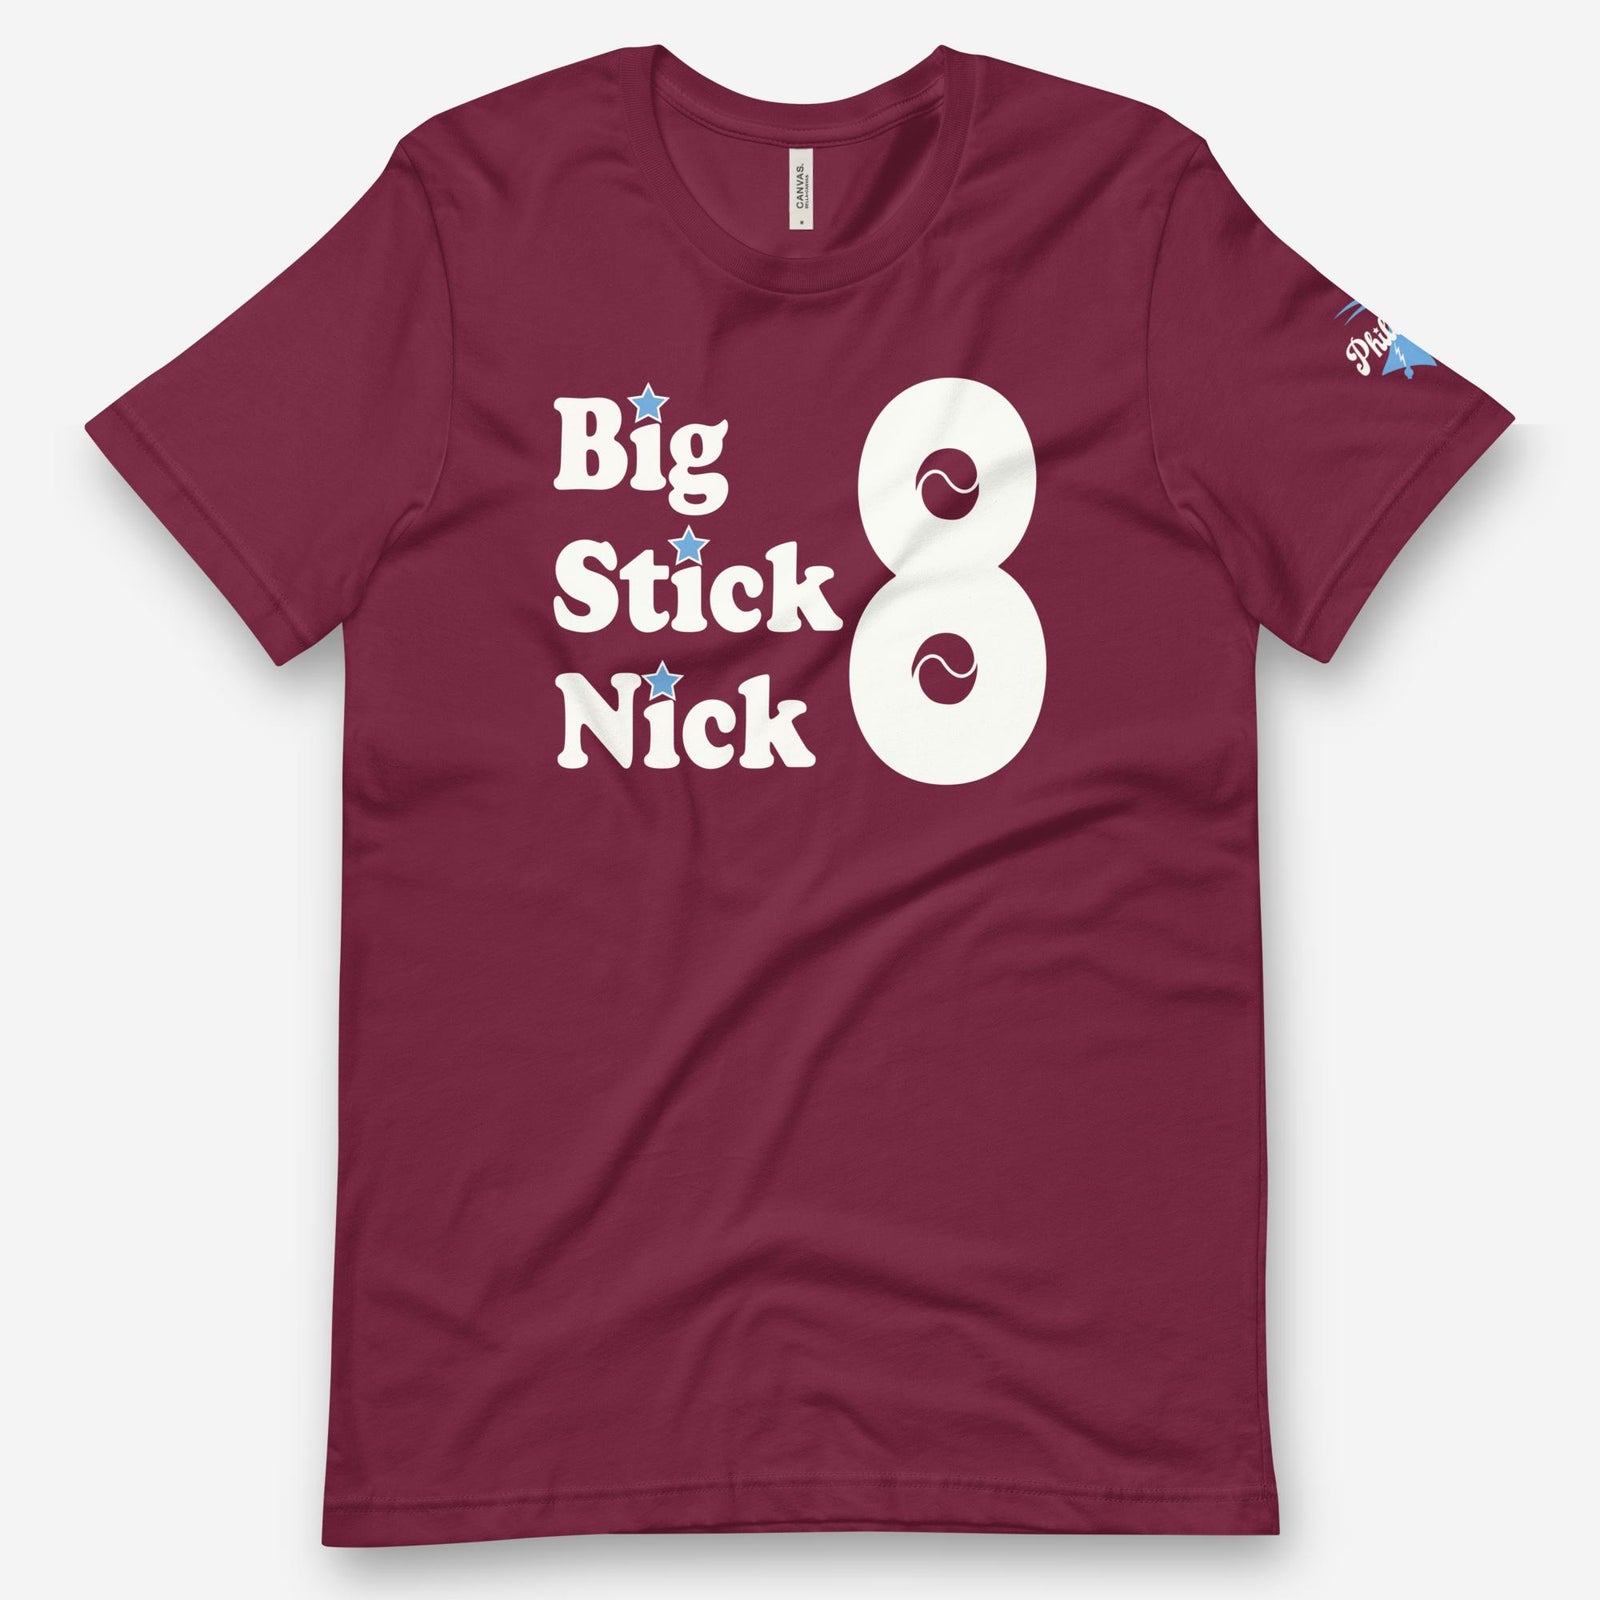 "Big Stick Nick" Tee